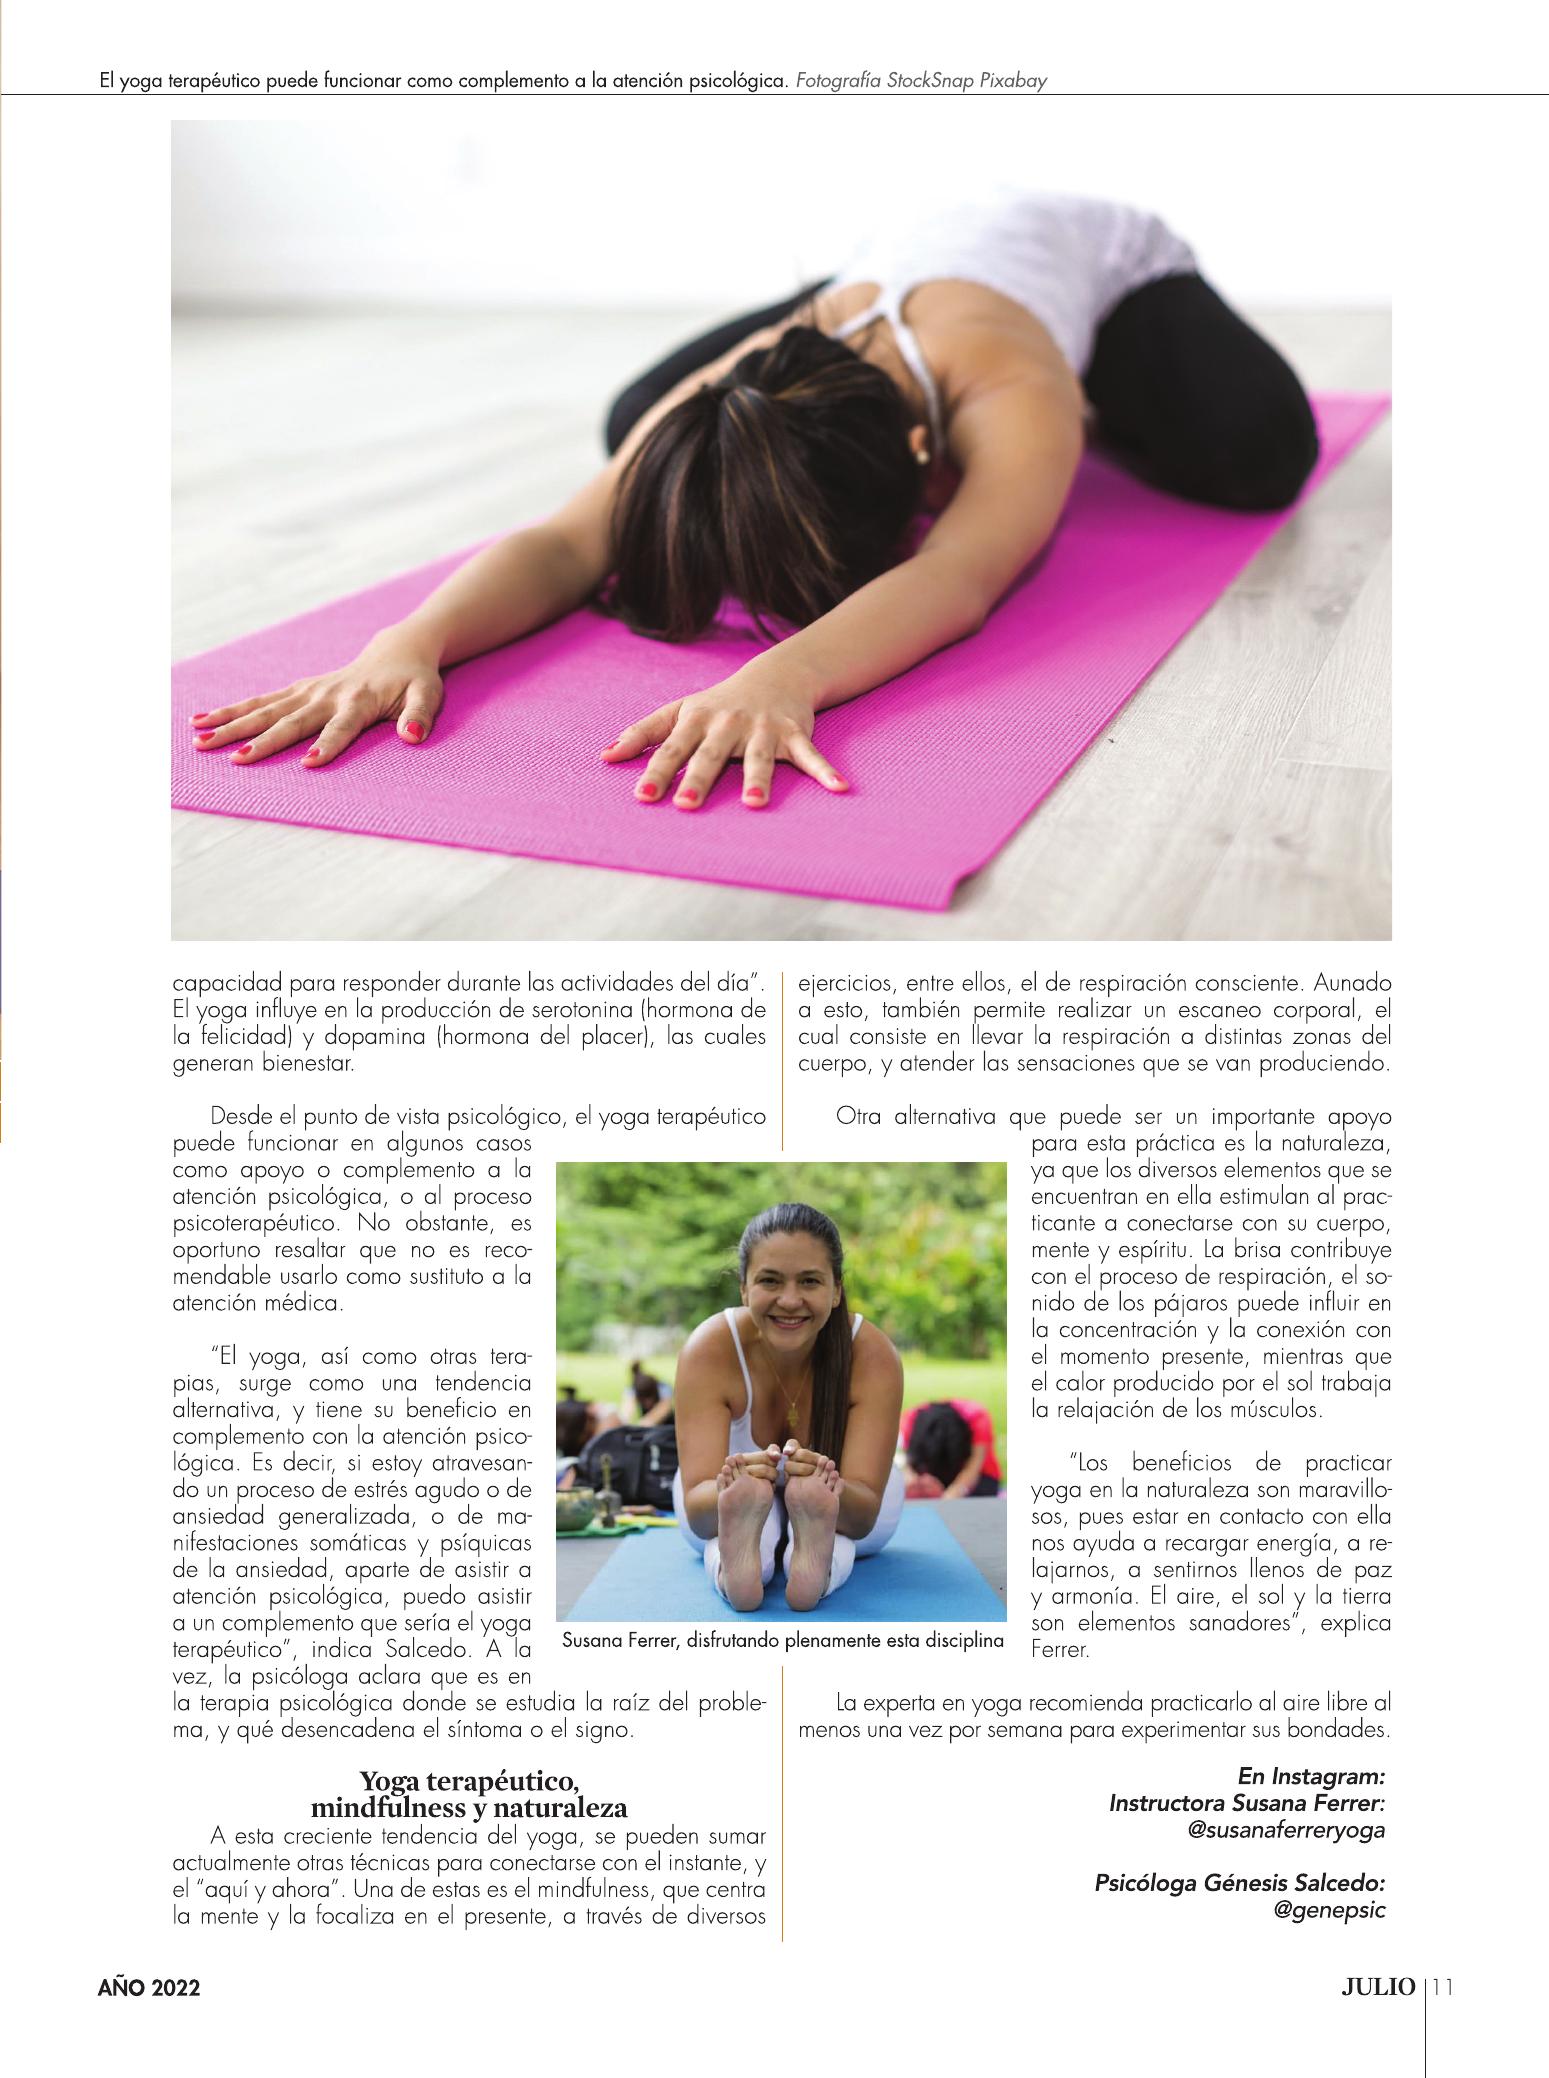 11-REV El yoga terapeutico complemento para la fisioterapia y la salud mental